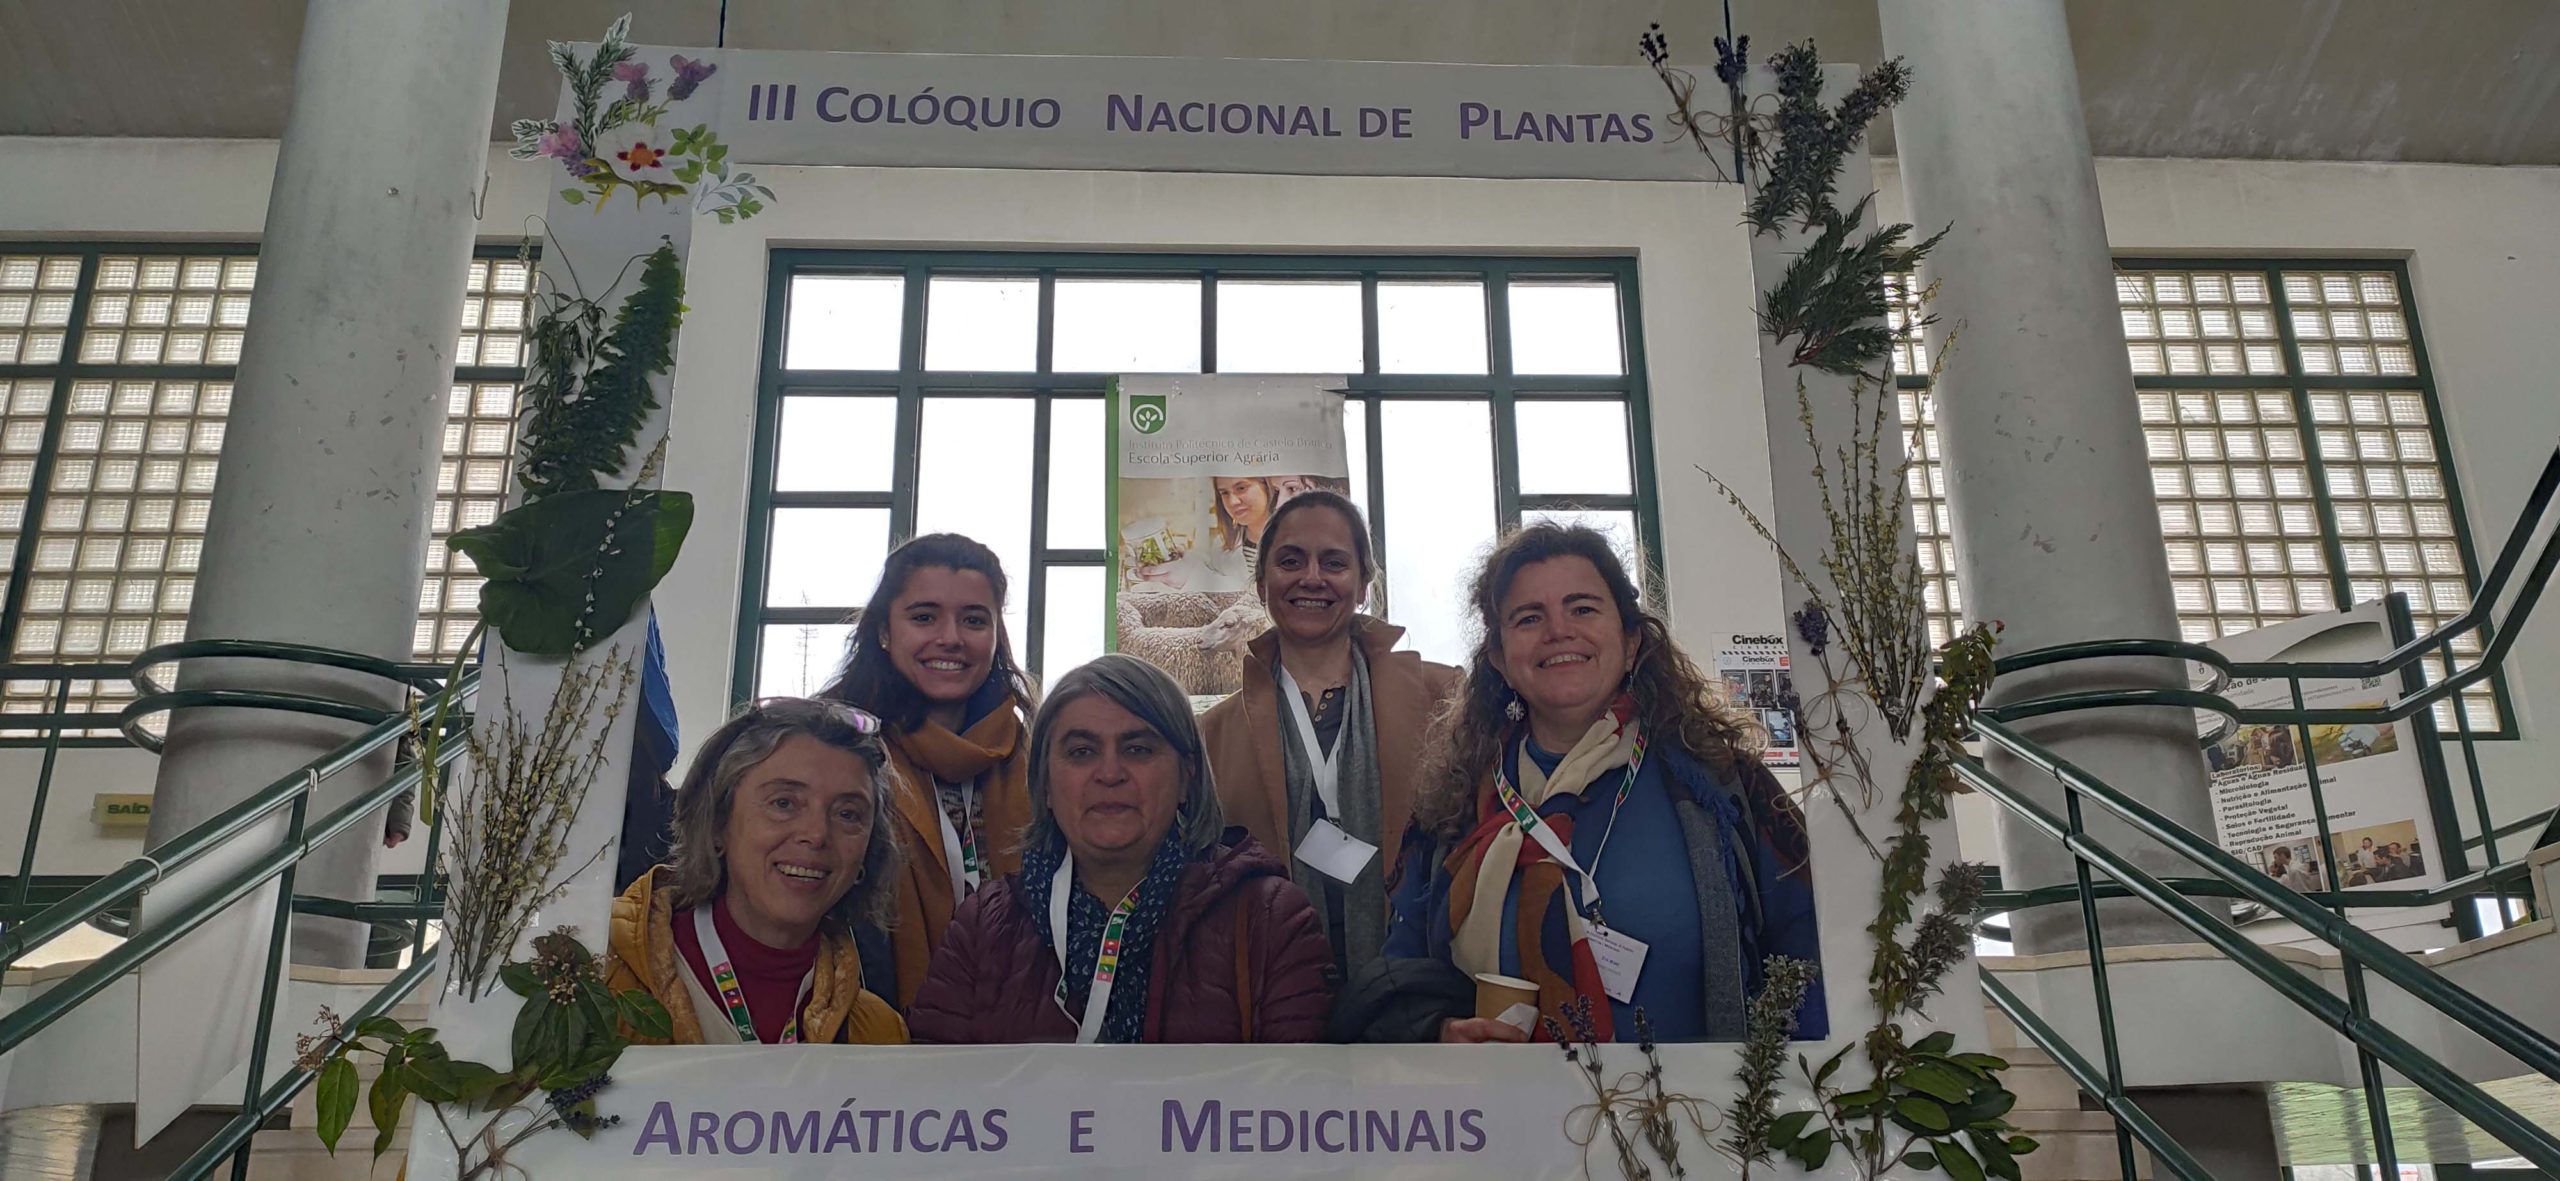 Présentation FoRuO au colloque sur les plantes aromatiques et médicinales au Portugal